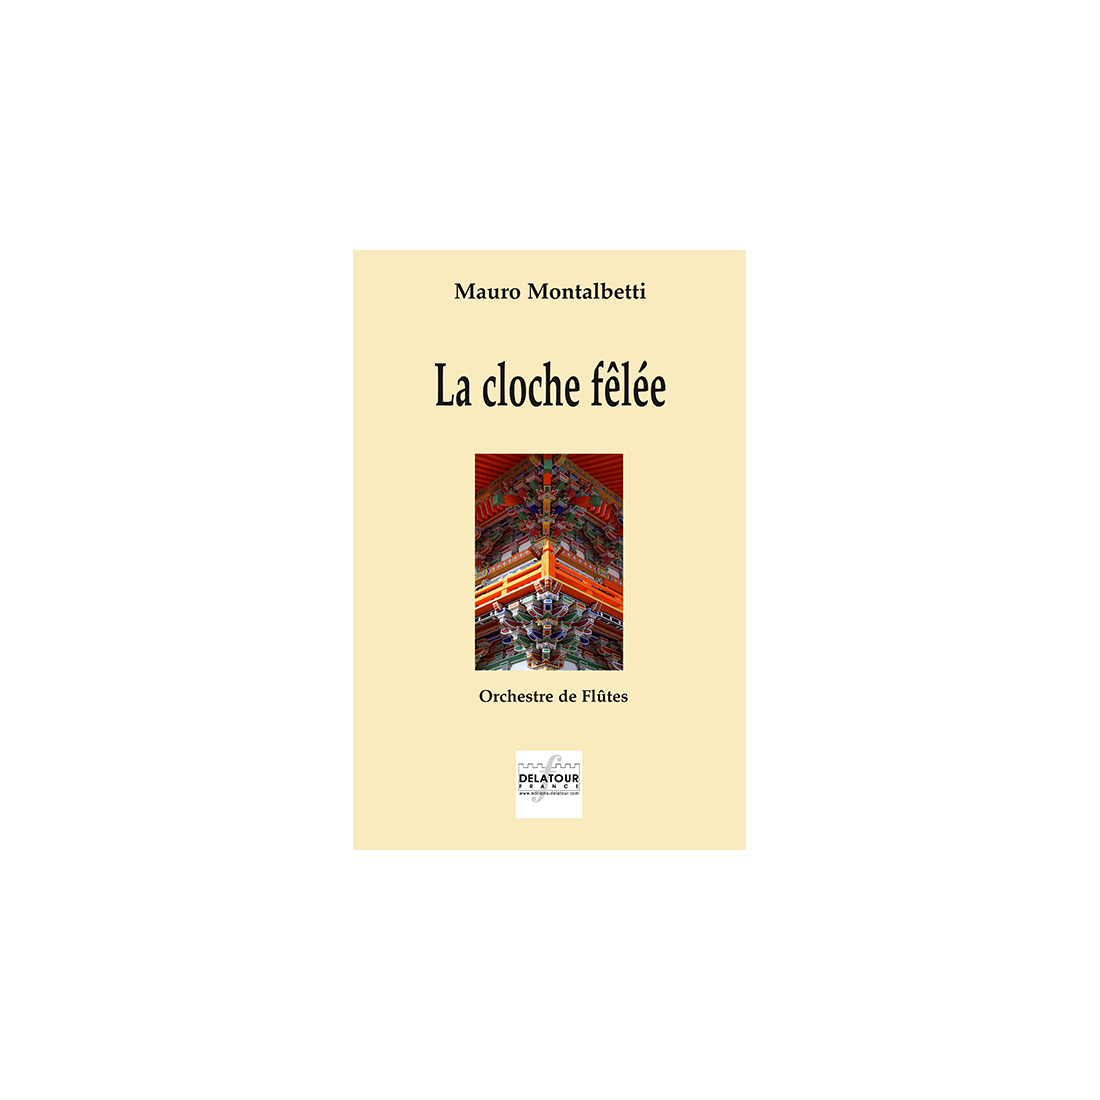 La cloche fêlée für Flötenorchester (Full score)